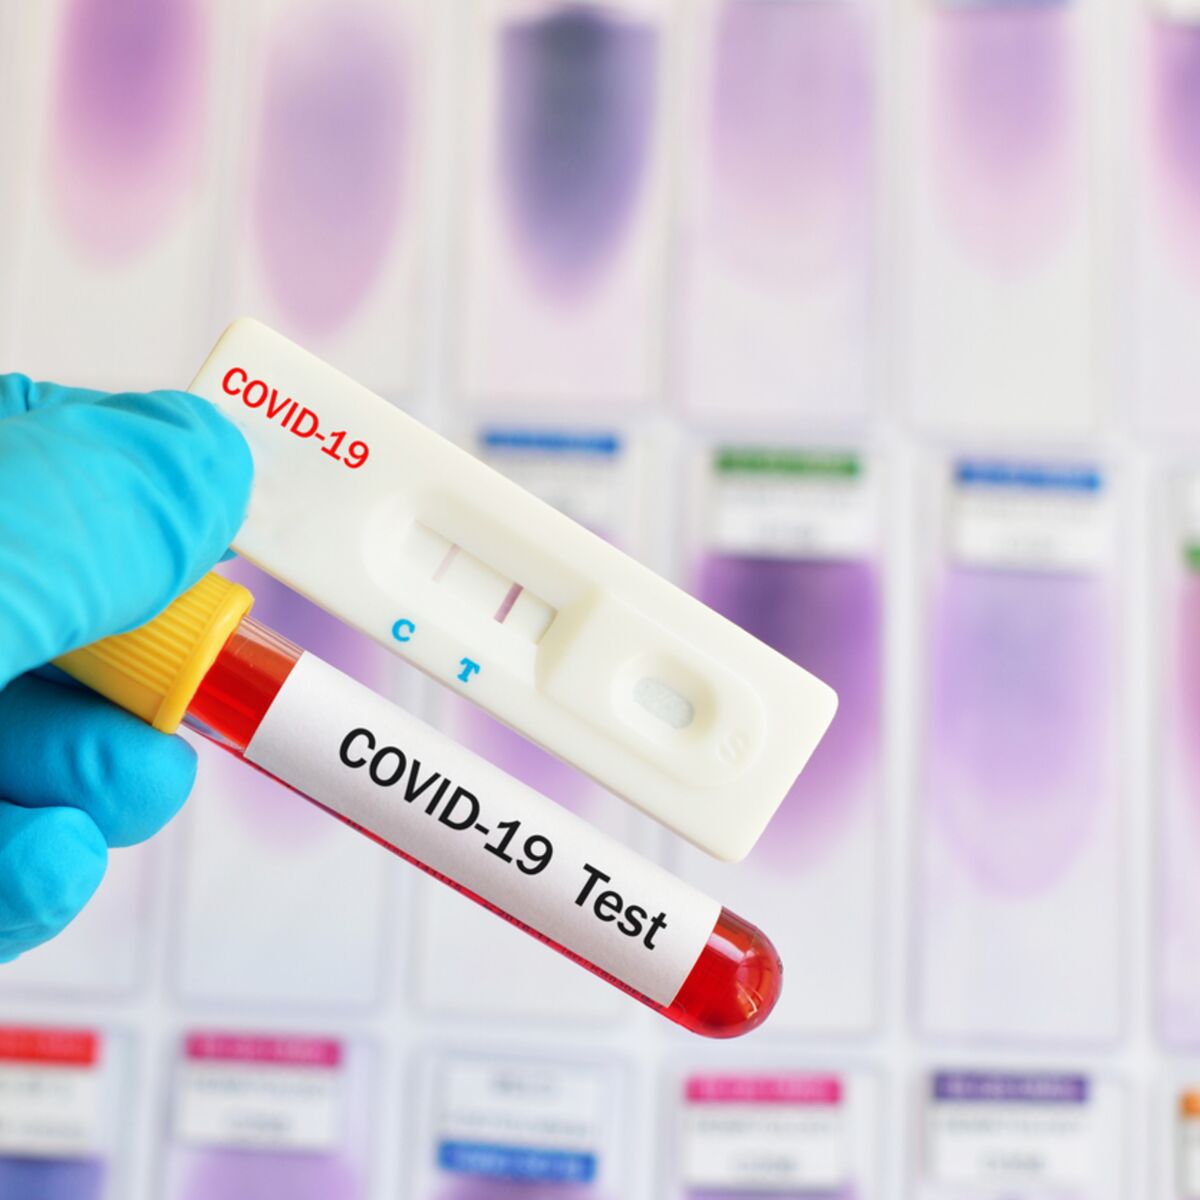 Les tests antigéniques rapides (Covid-19) : que devez-vous savoir ?